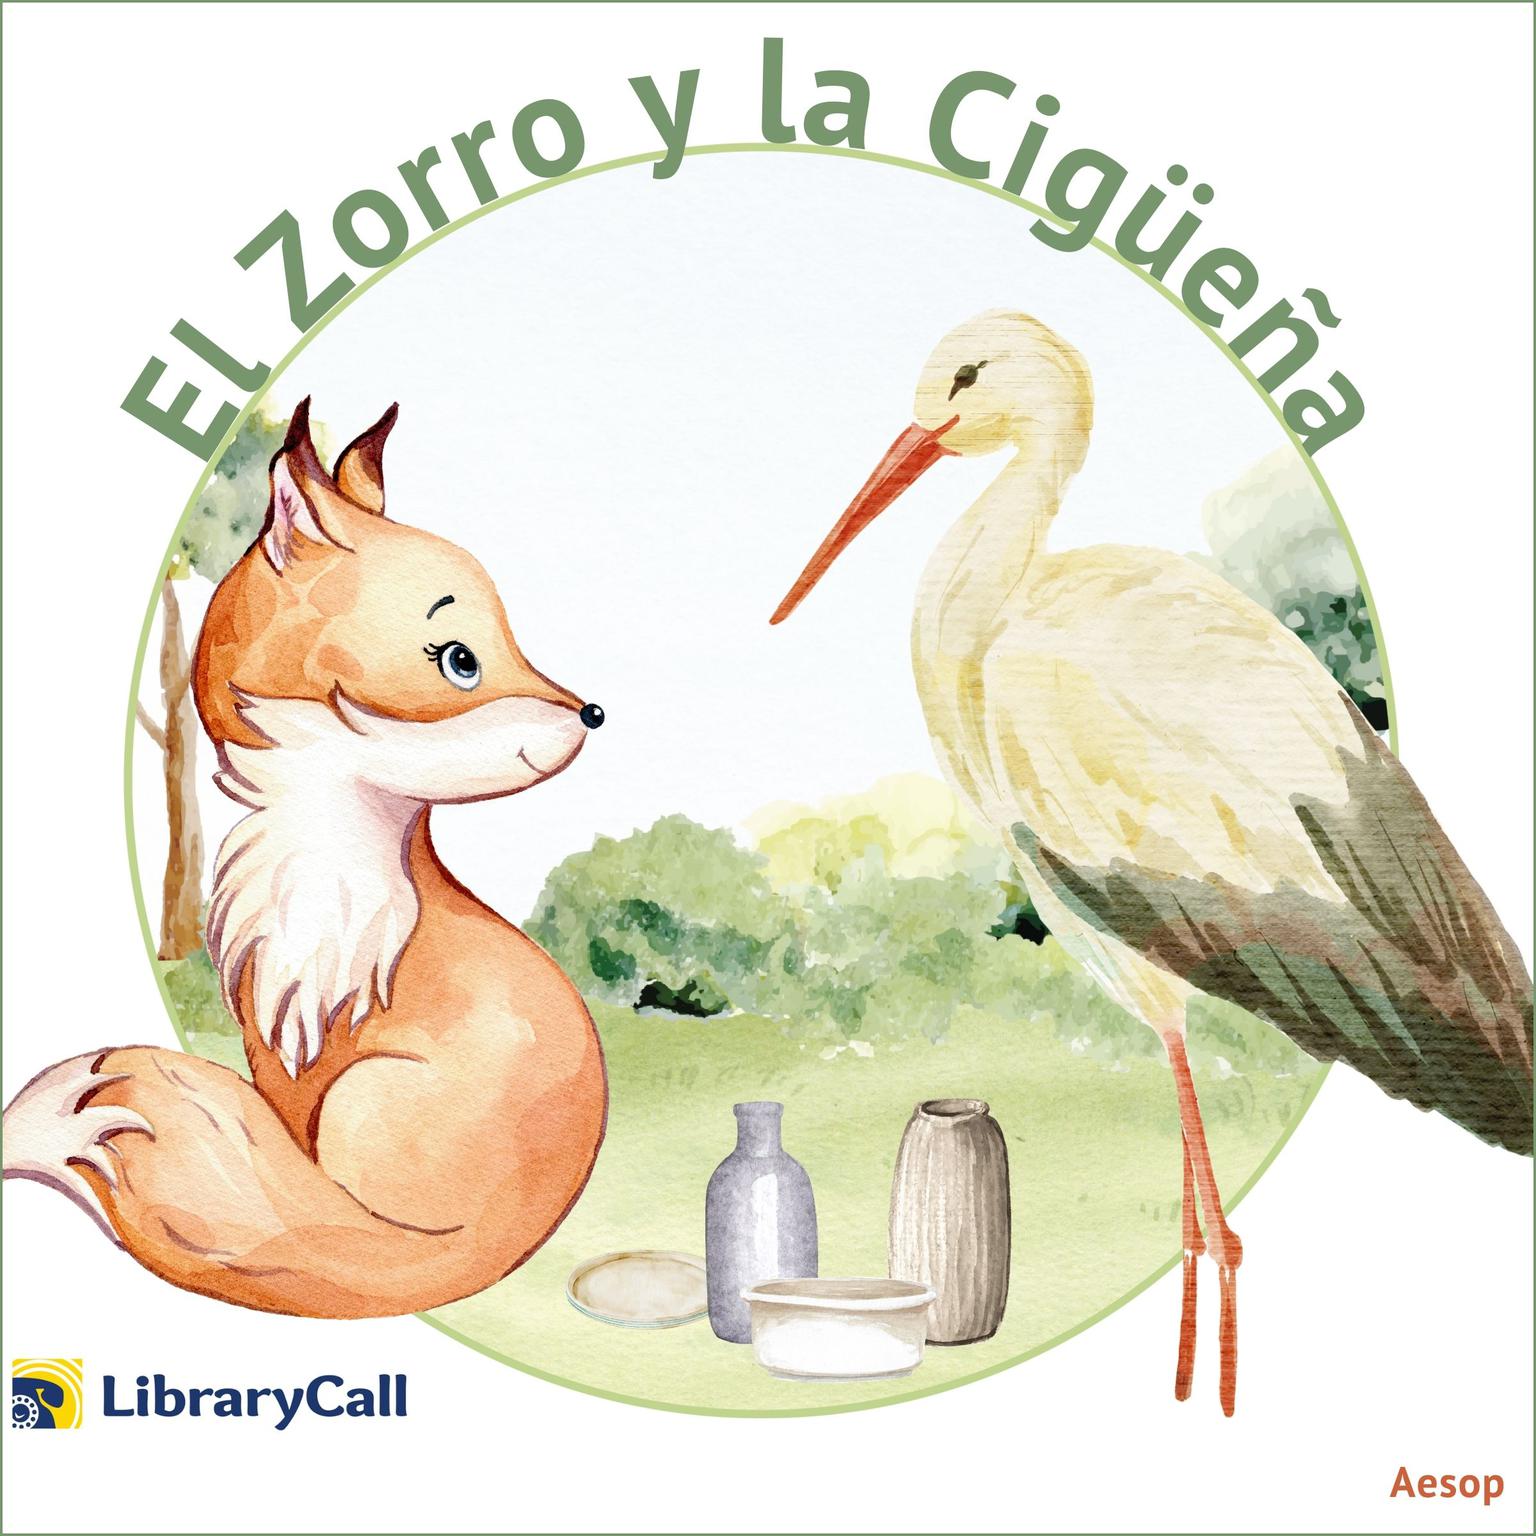 El Zorro y la cigüeña (Abridged) Audiobook, by Aesop